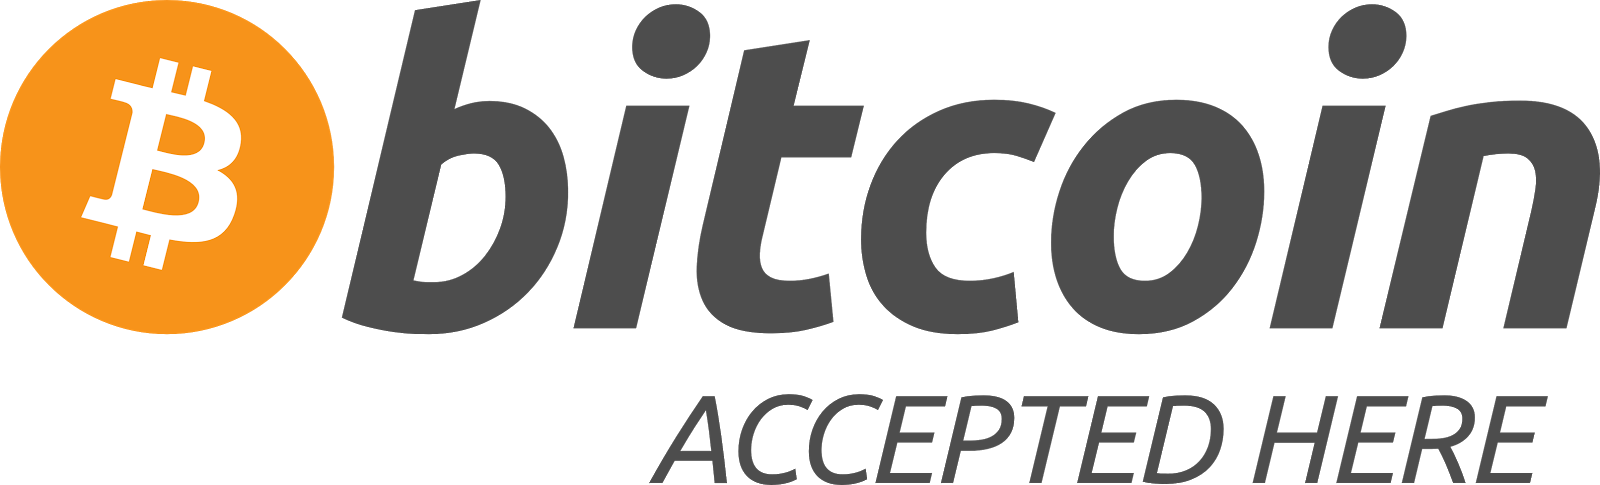 Litecoin logo transparent обмен валюты спб лиговский пер 2